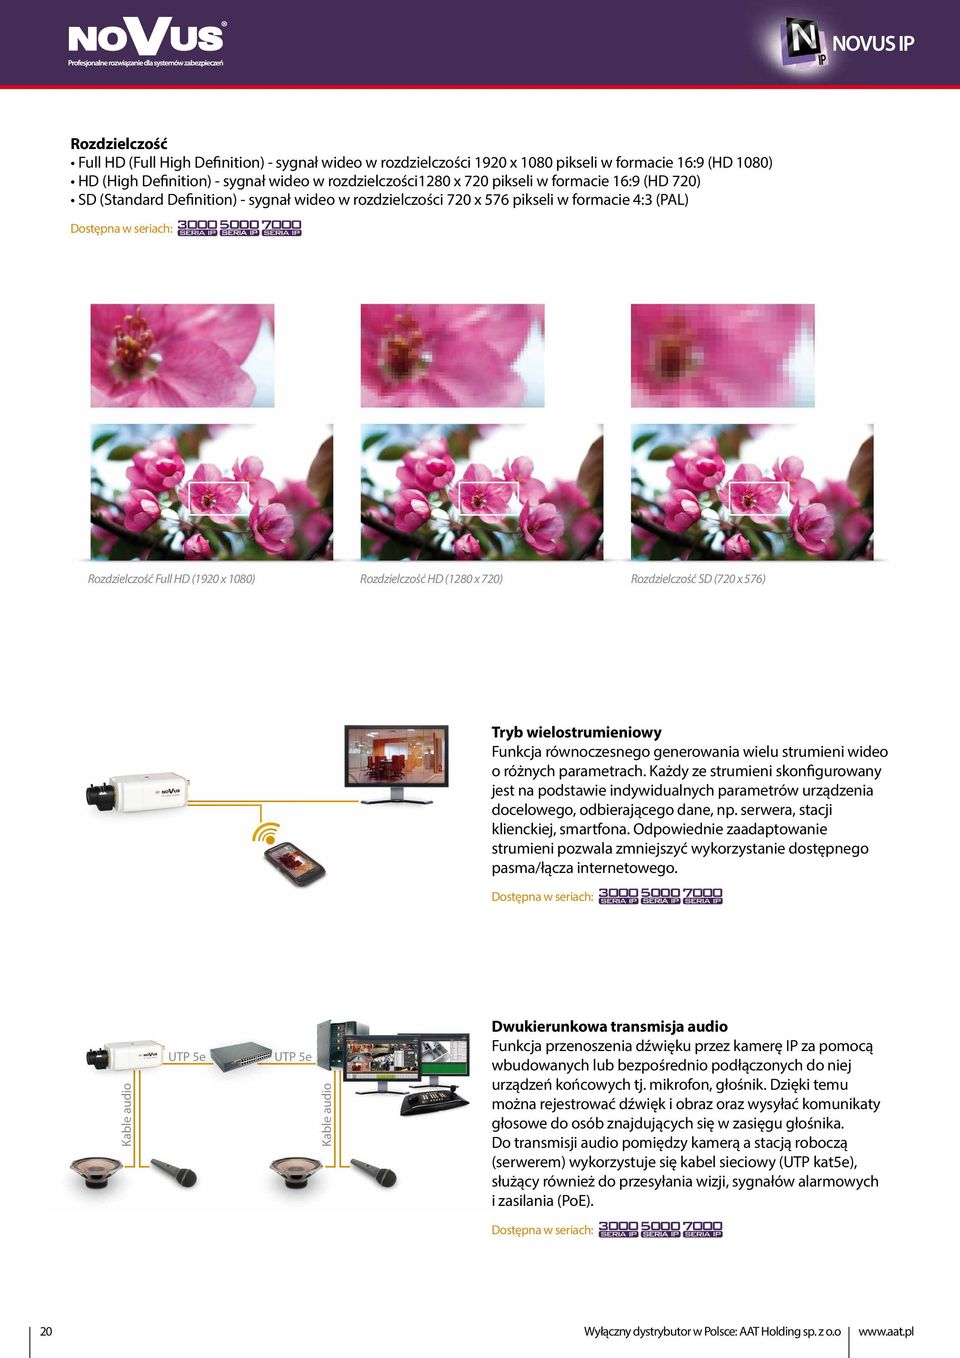 Rozdzielczość HD (1280 x 720) Rozdzielczość SD (720 x 576) Tryb wielostrumieniowy Funkcja równoczesnego generowania wielu strumieni wideo o różnych parametrach.